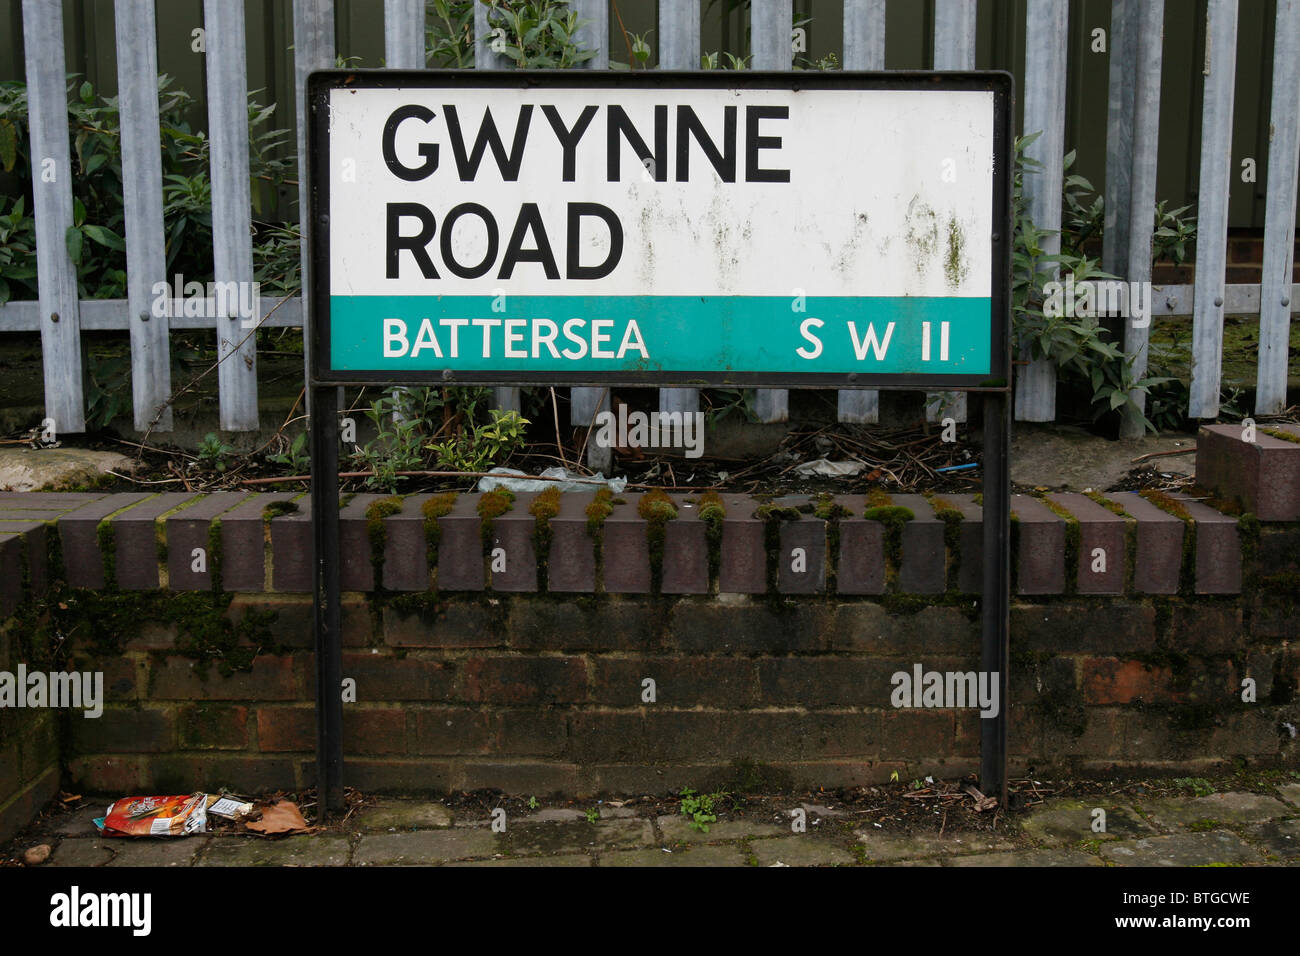 Gwynne Road street sign in Battersea, South London. Stock Photo